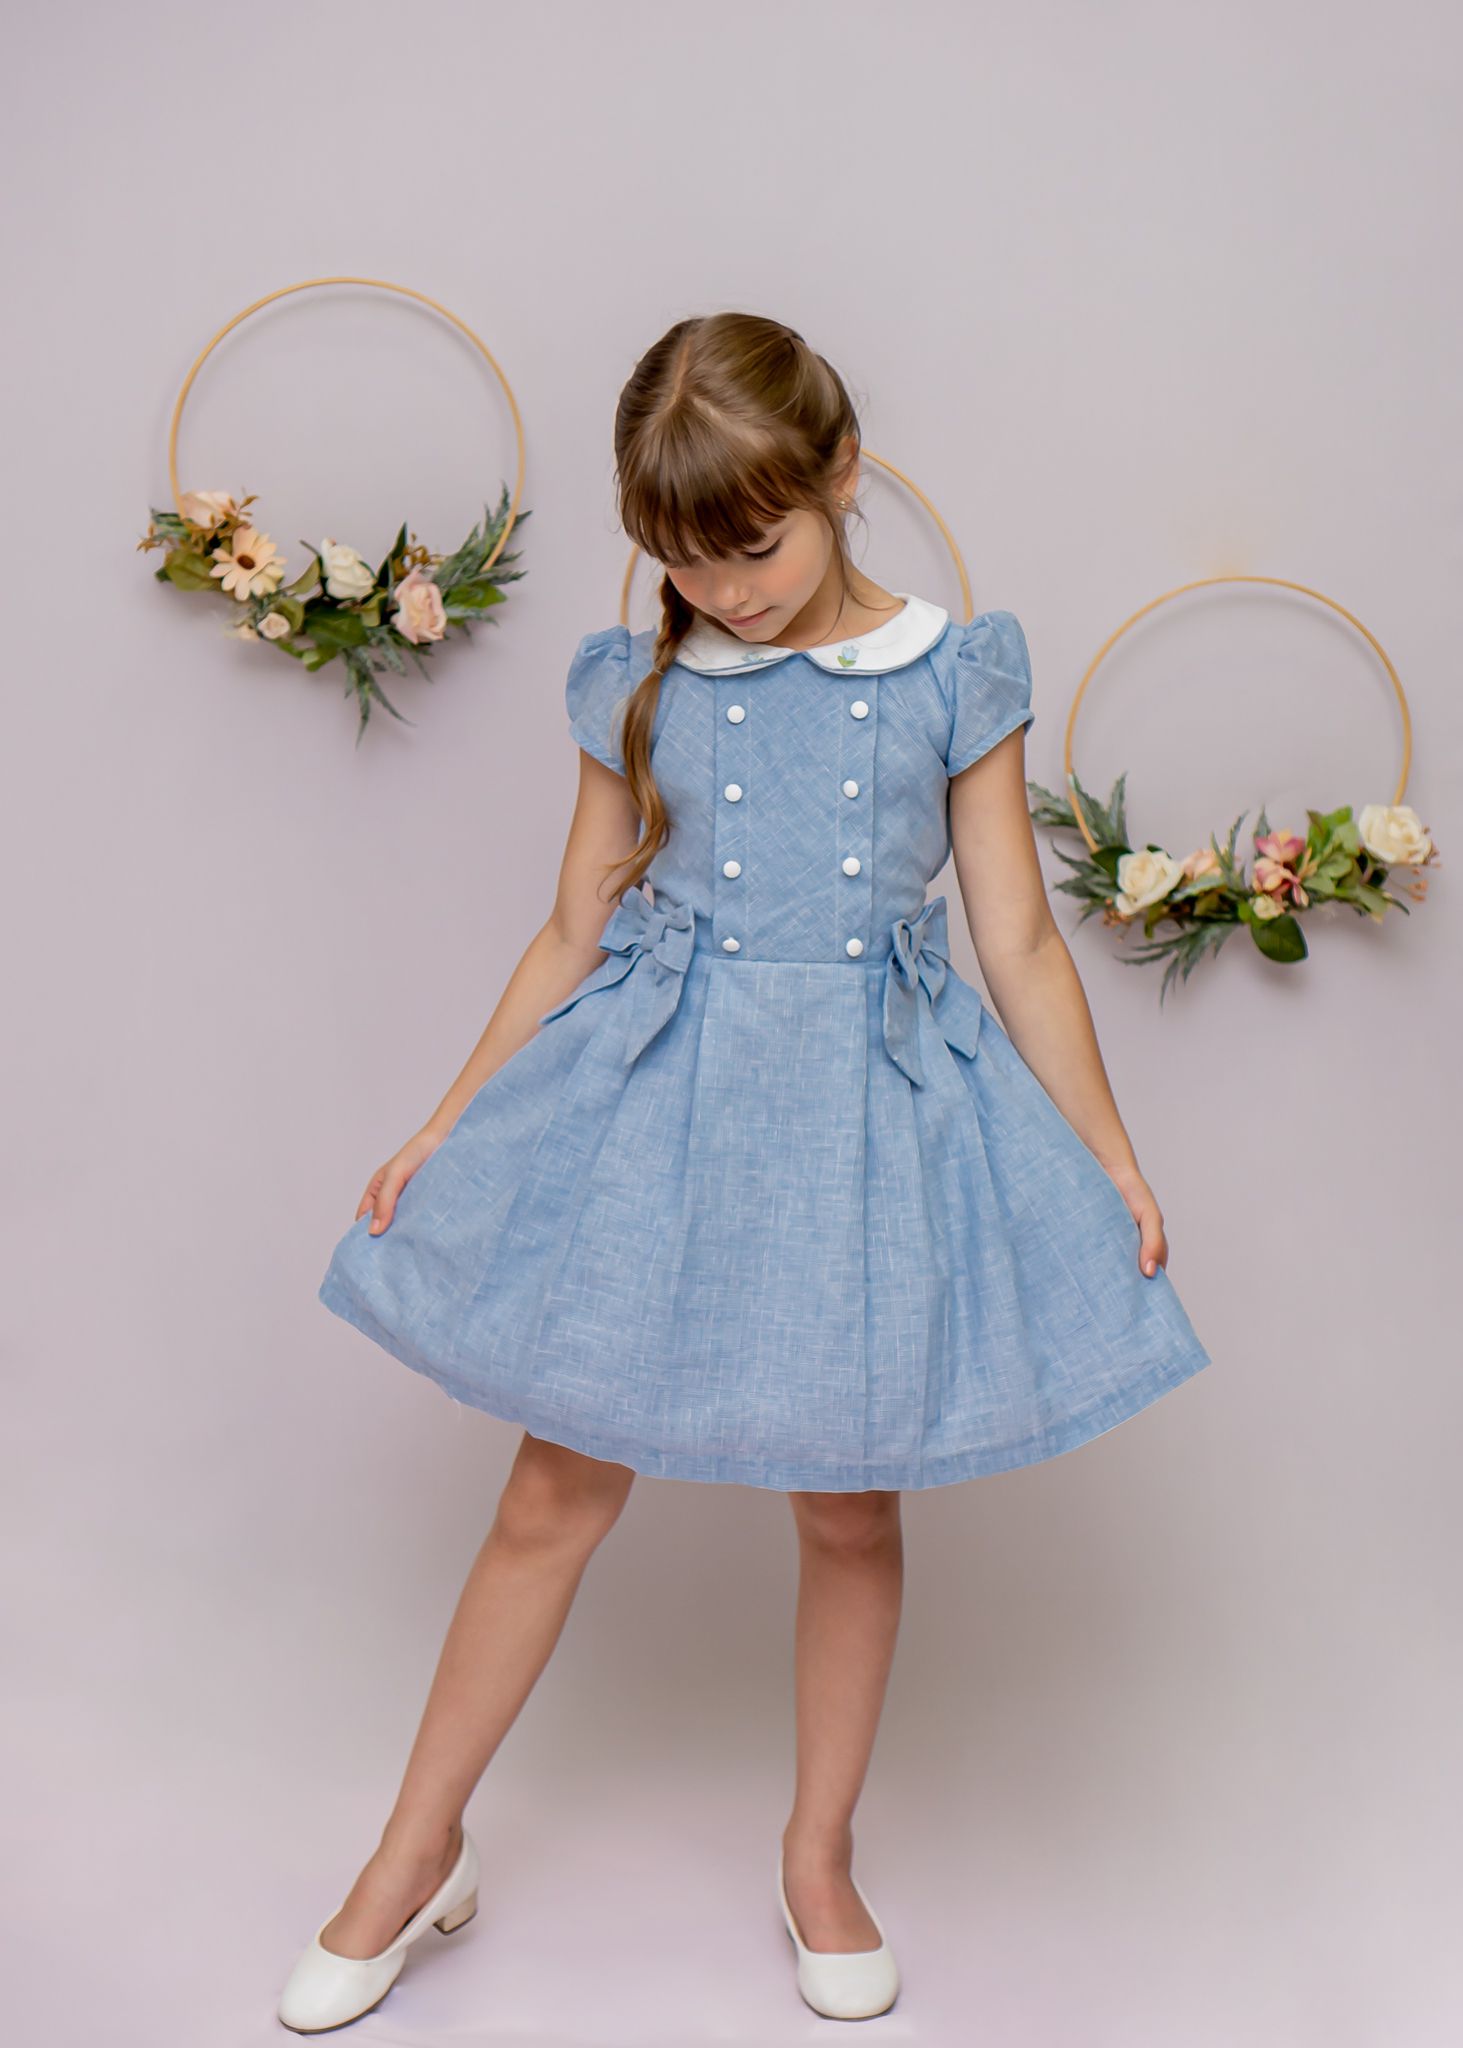 Vestido Infantil Xadrez Principe de Gales Azul Claro - Gicas Baby Store